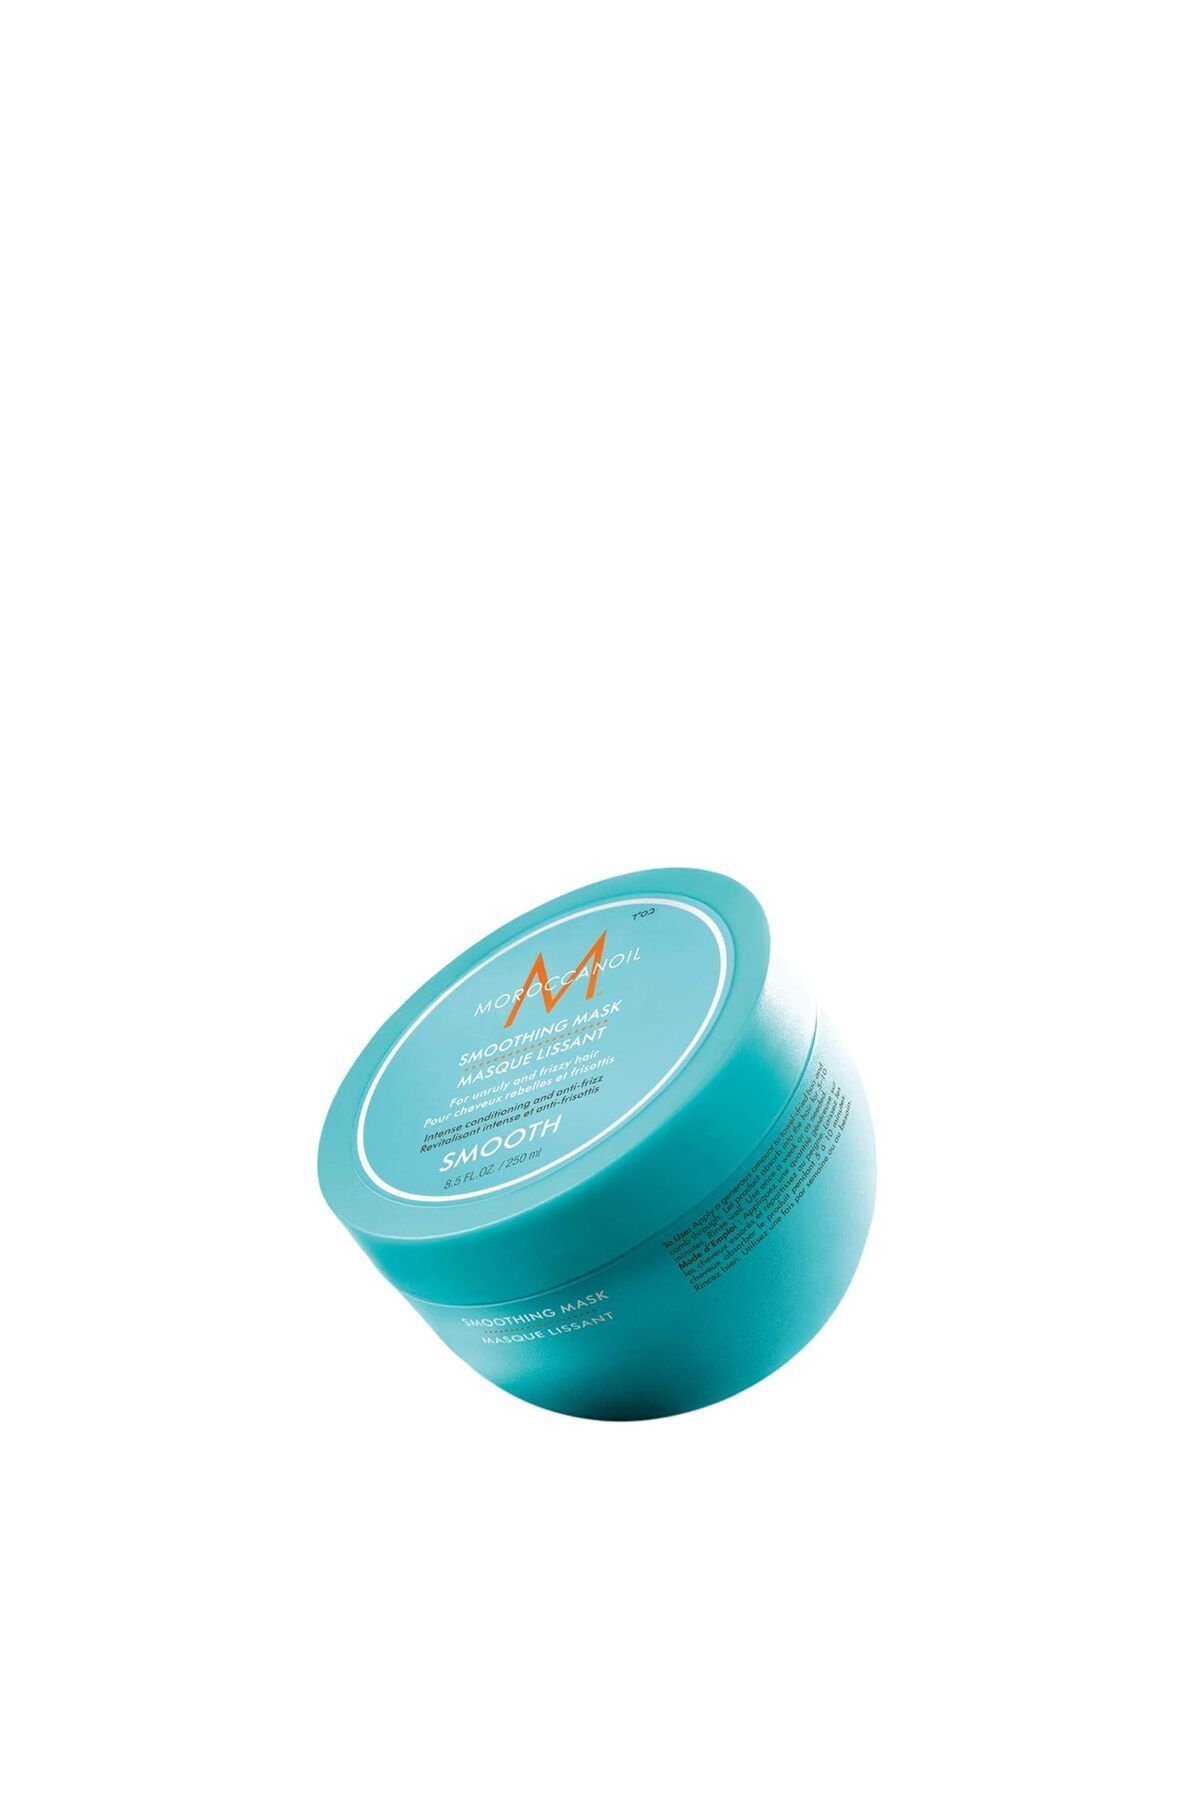 Moroccanoil SMOOTH Asi&Kıvırcık Saçlar için Argan Yağlı Konsantre Saç Maskesi 250ml Trustys.Y103